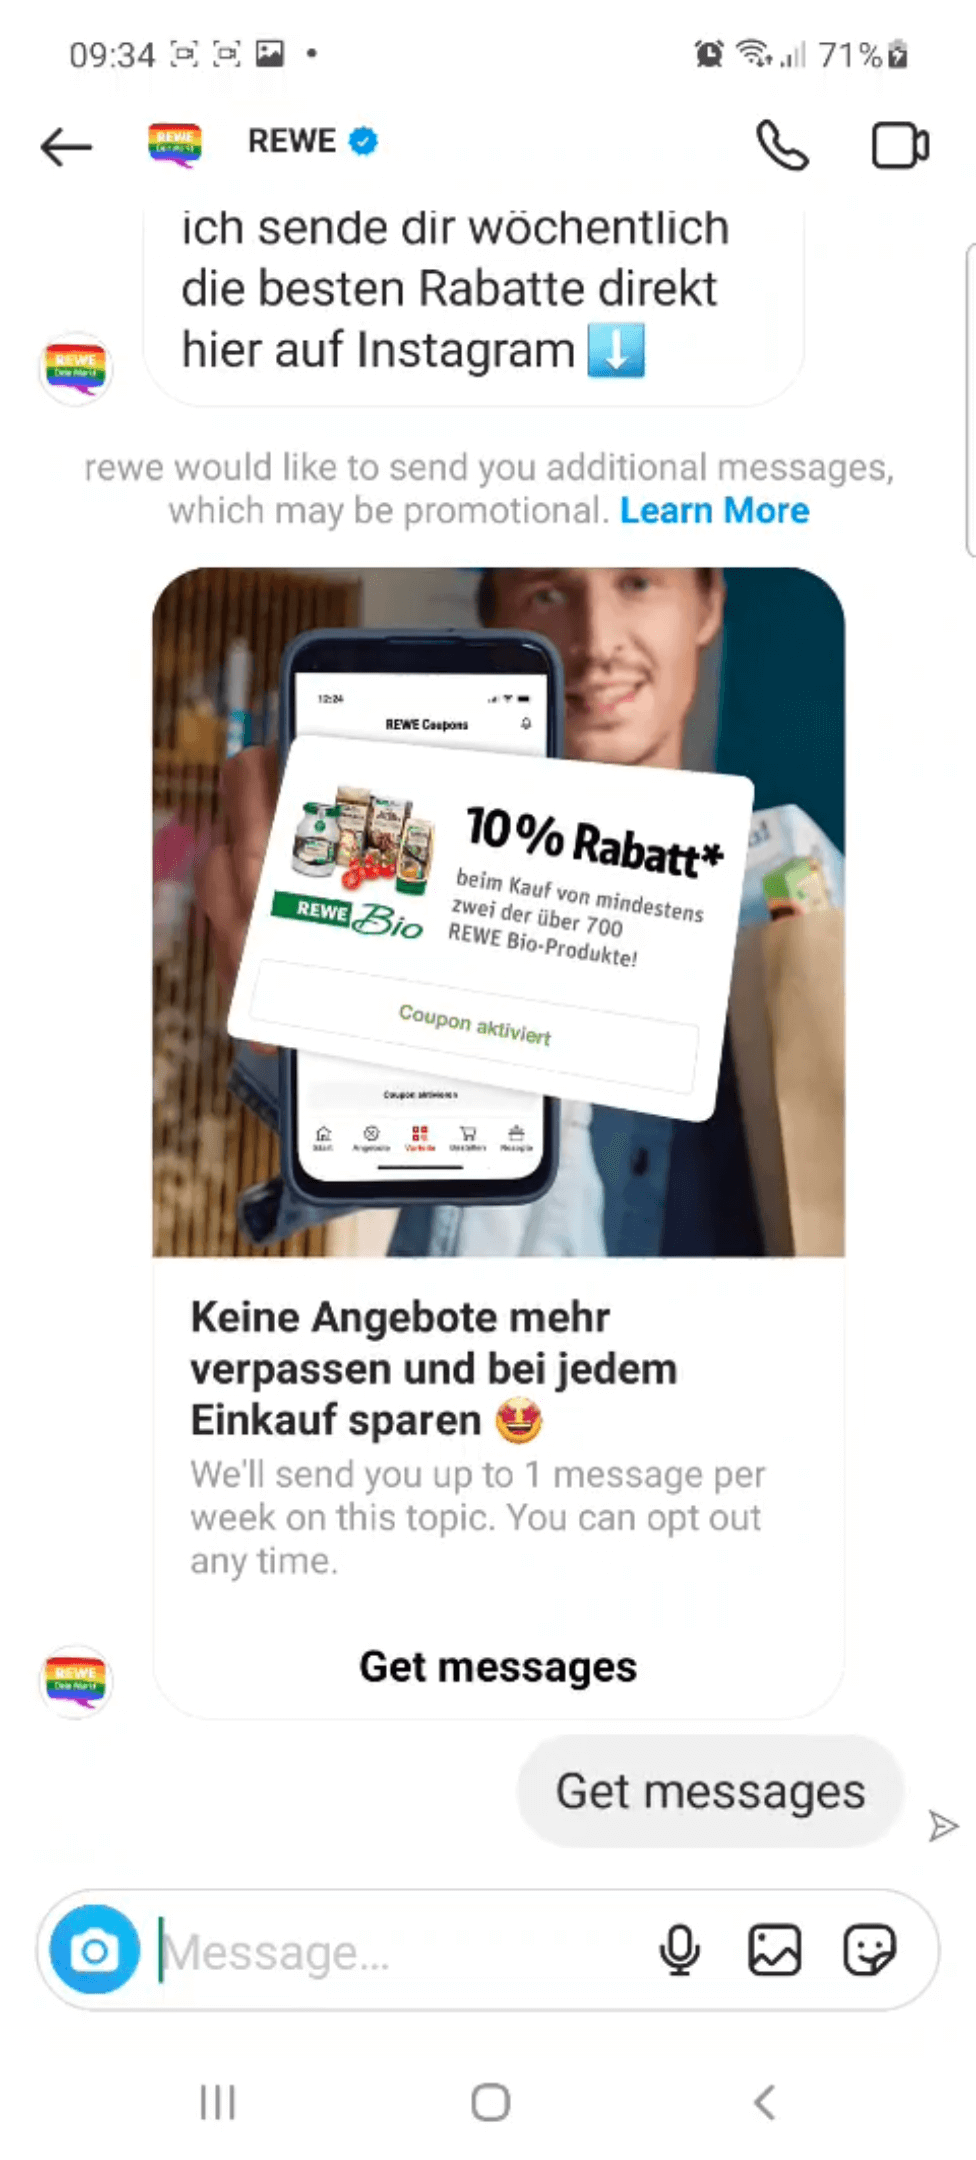 Rewe Instagram Messaging digital flyer